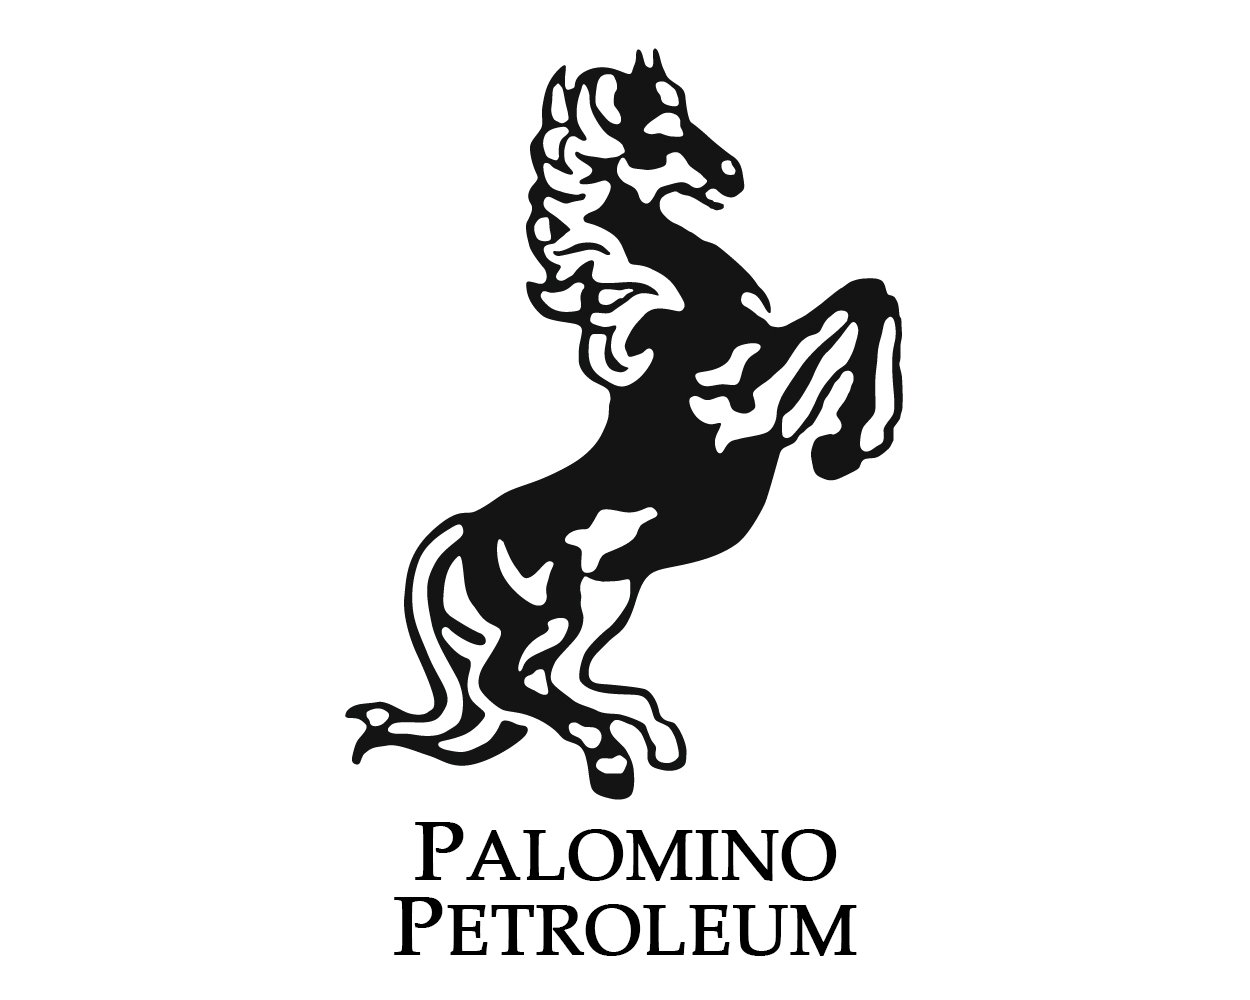 Palomino Petroleum